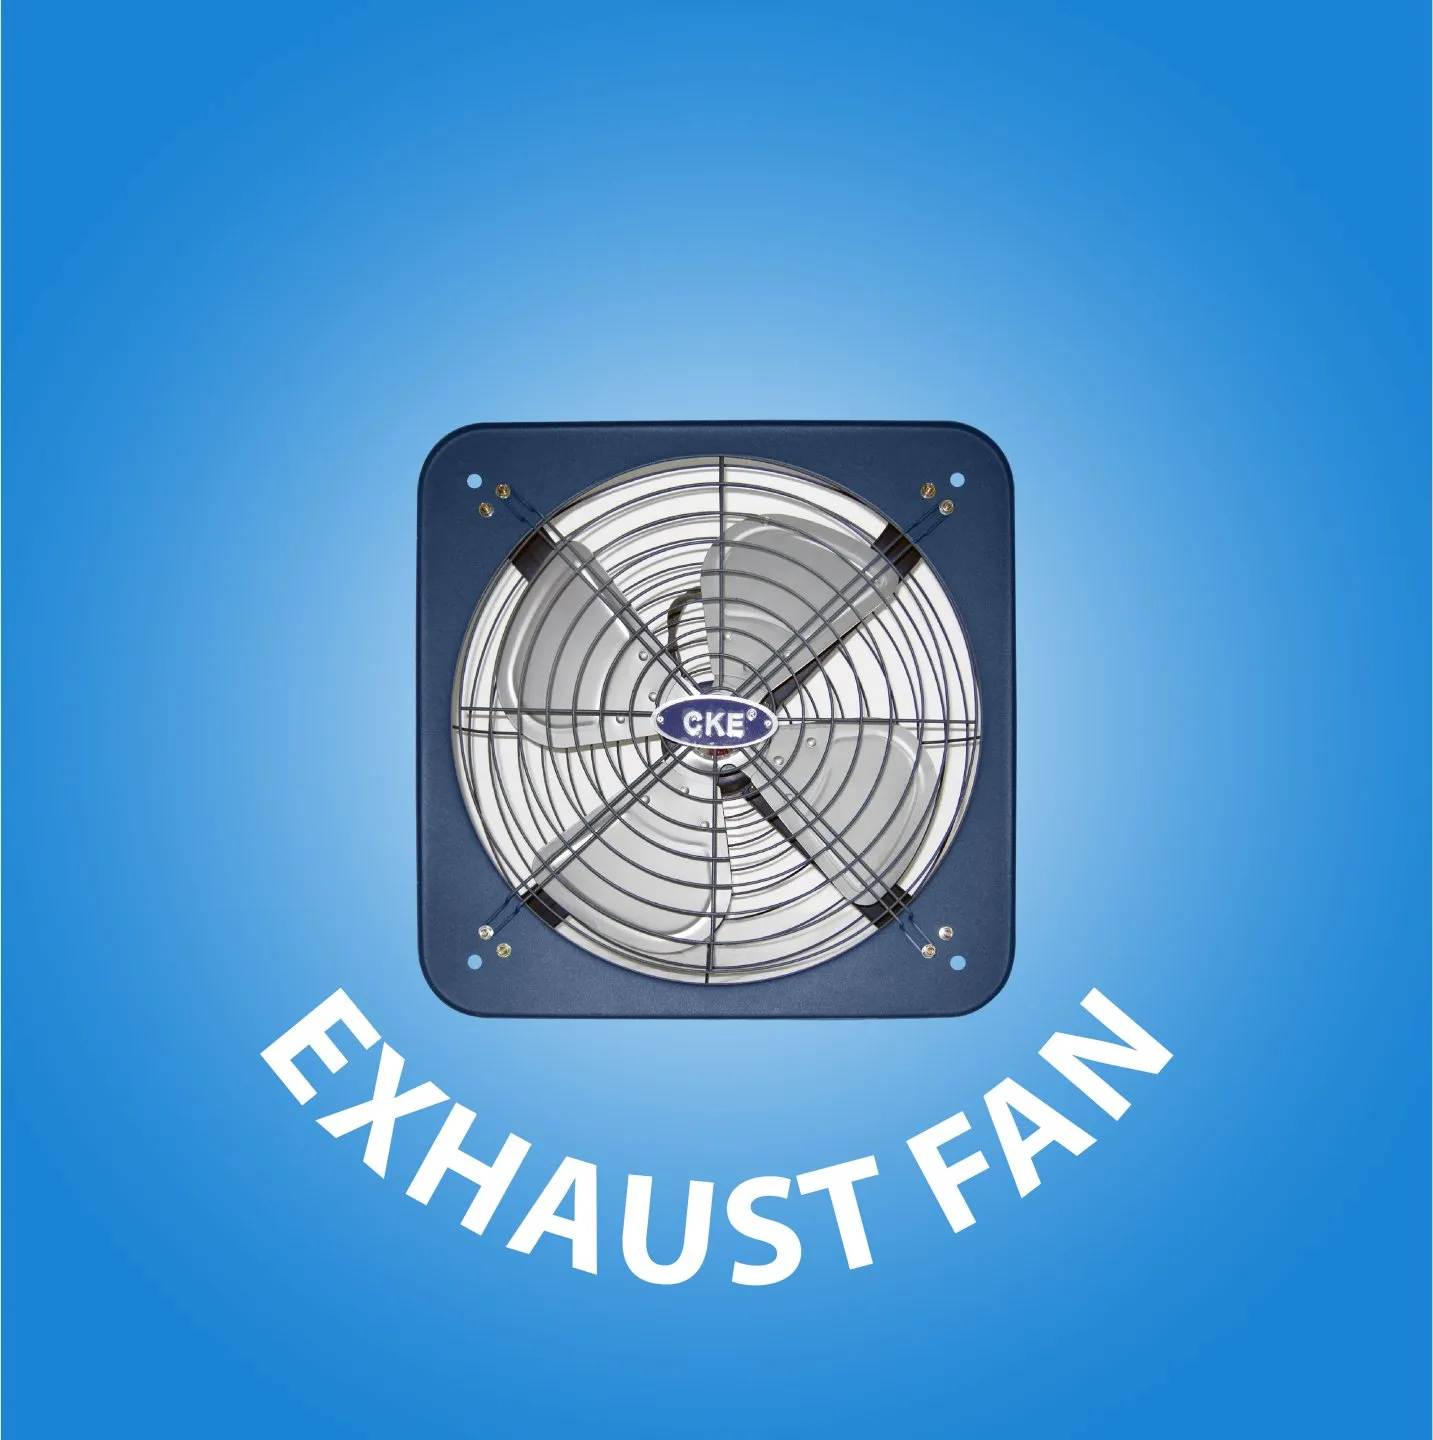  Exhaust Fan cover kategori website 21